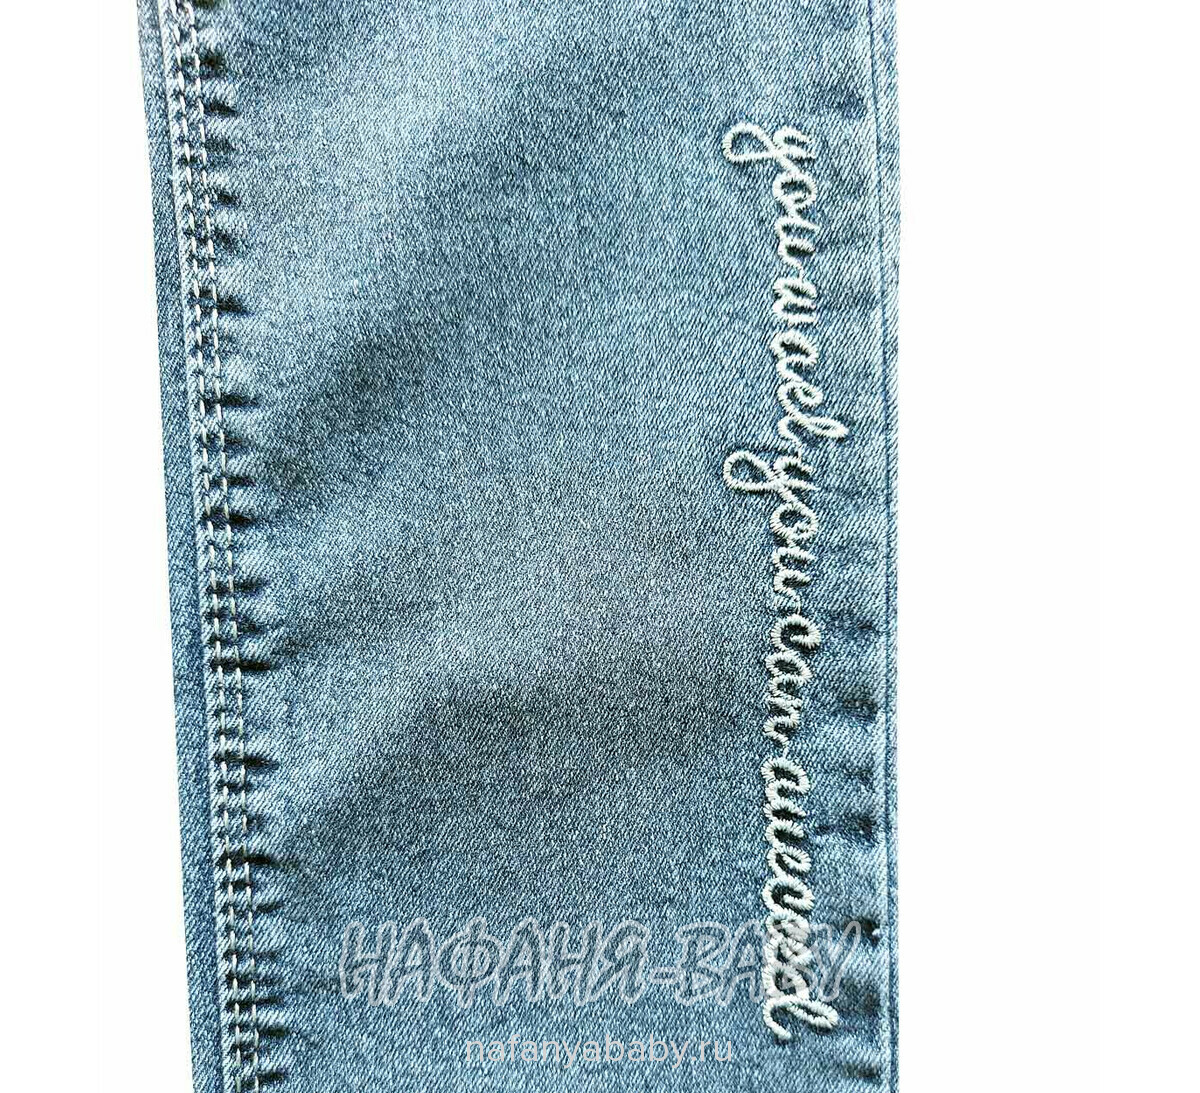 Детские джинсы TATI Jeans арт: 9268, 8-12 лет, цвет синий, оптом Турция